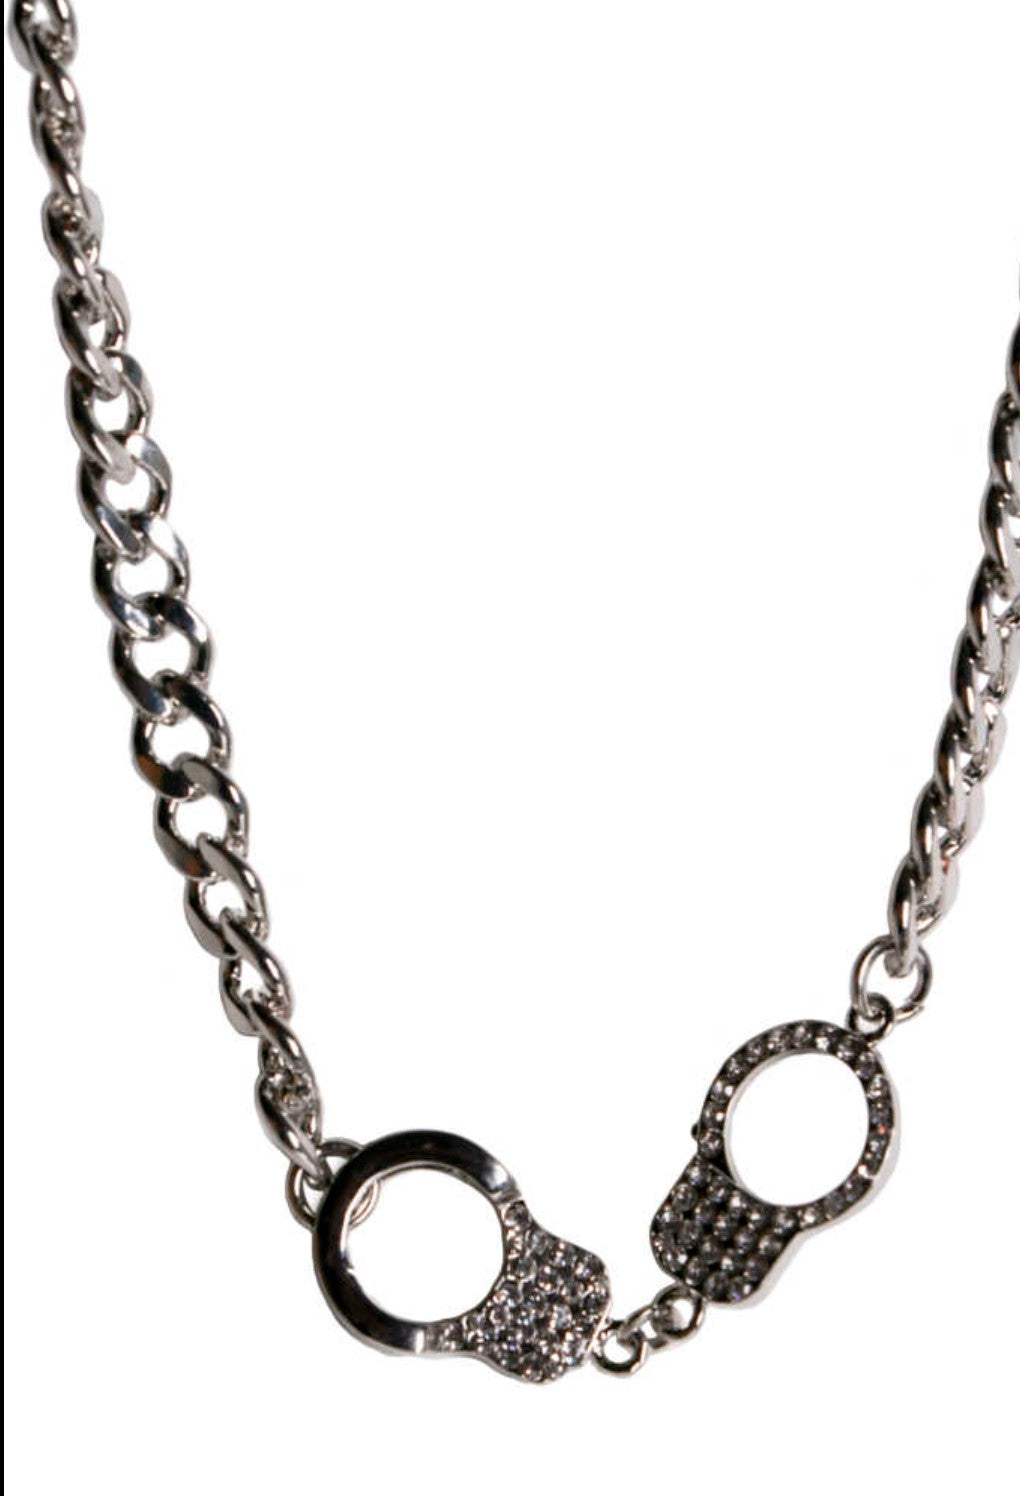 Rhinestone Handcuff Necklace